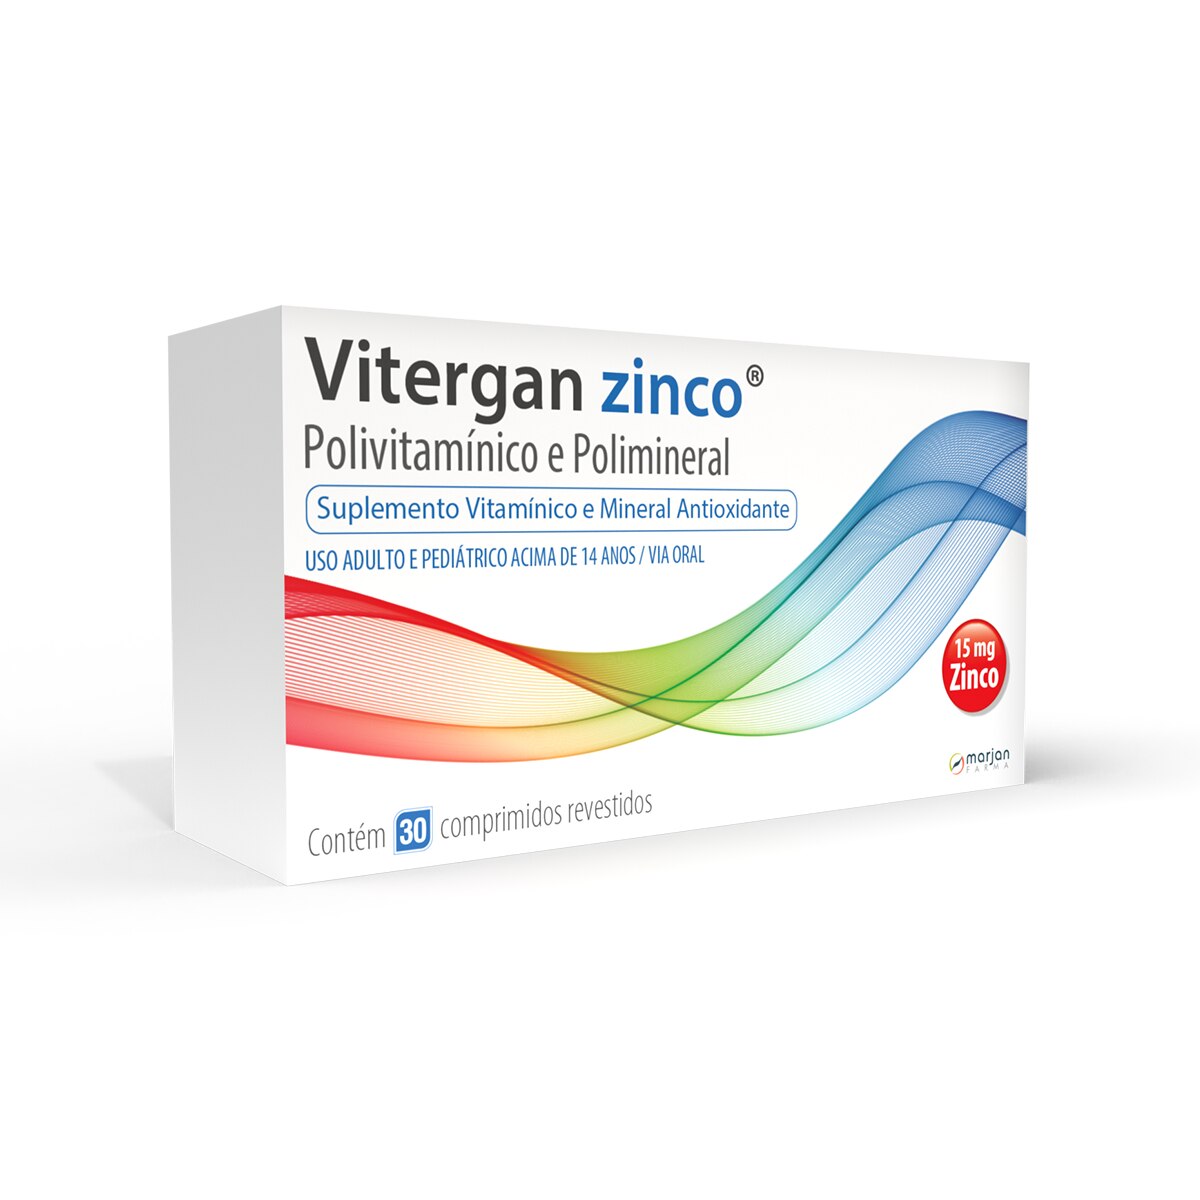 Vitergan Zinco 30 Comprimidos Revestidos